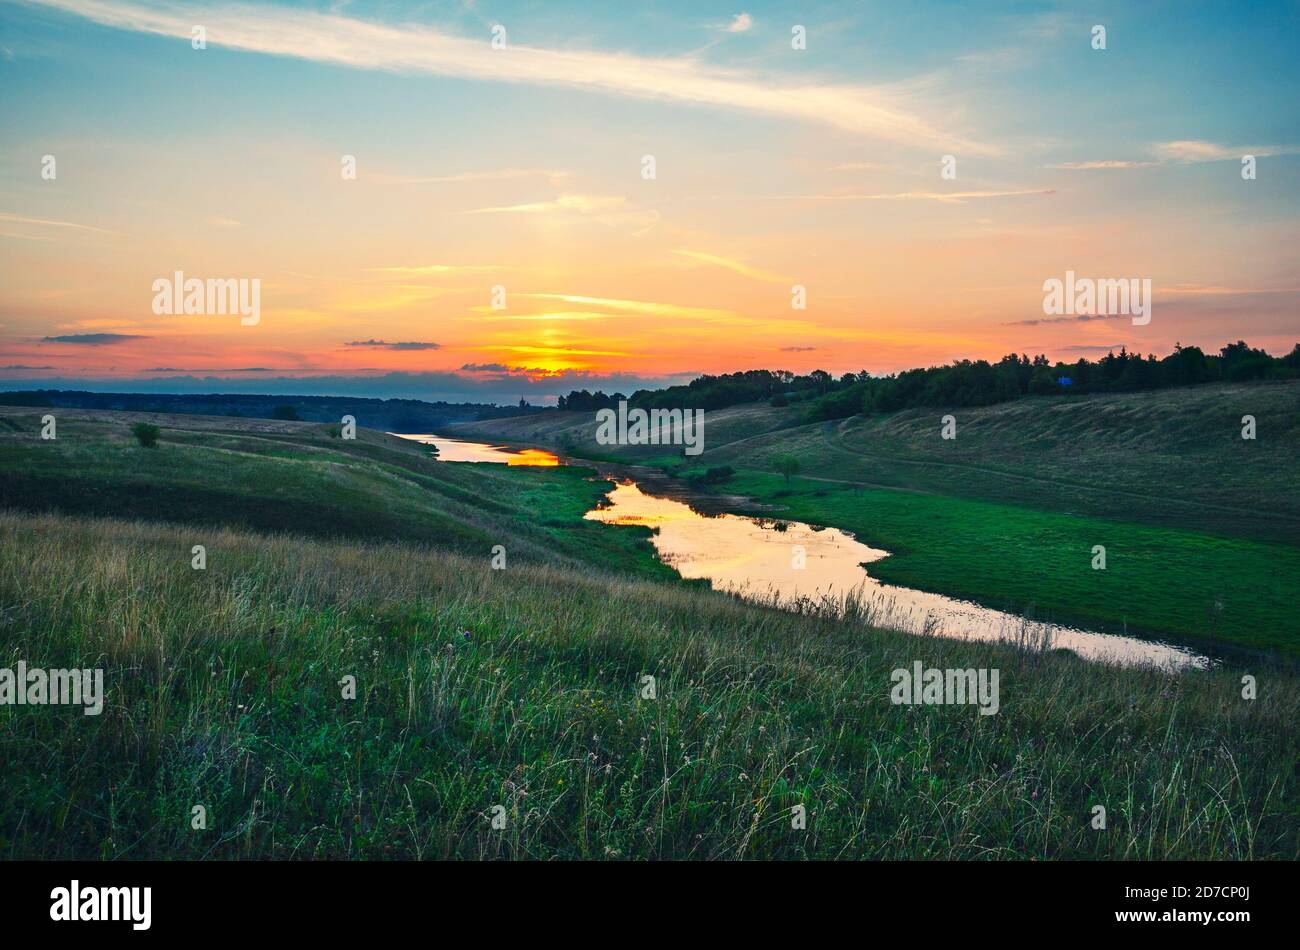 Sommerlandschaft mit Fluss fließt zwischen den grünen Hügeln auf einem Hintergrund von bunten Sonnenuntergang Himmel. Stockfoto